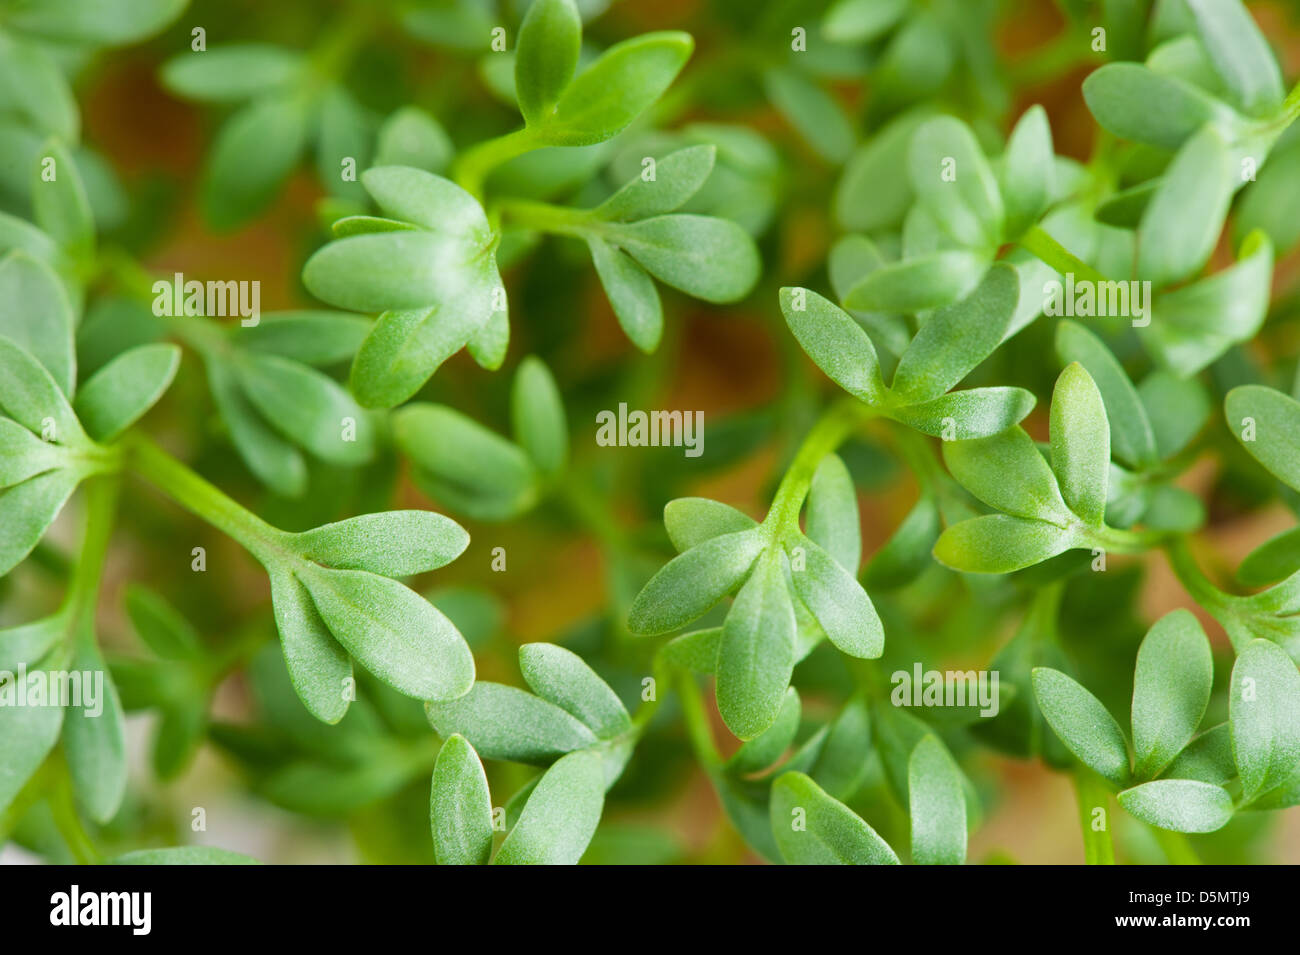 Zoom on Lepidium sativum or cress leaves Stock Photo